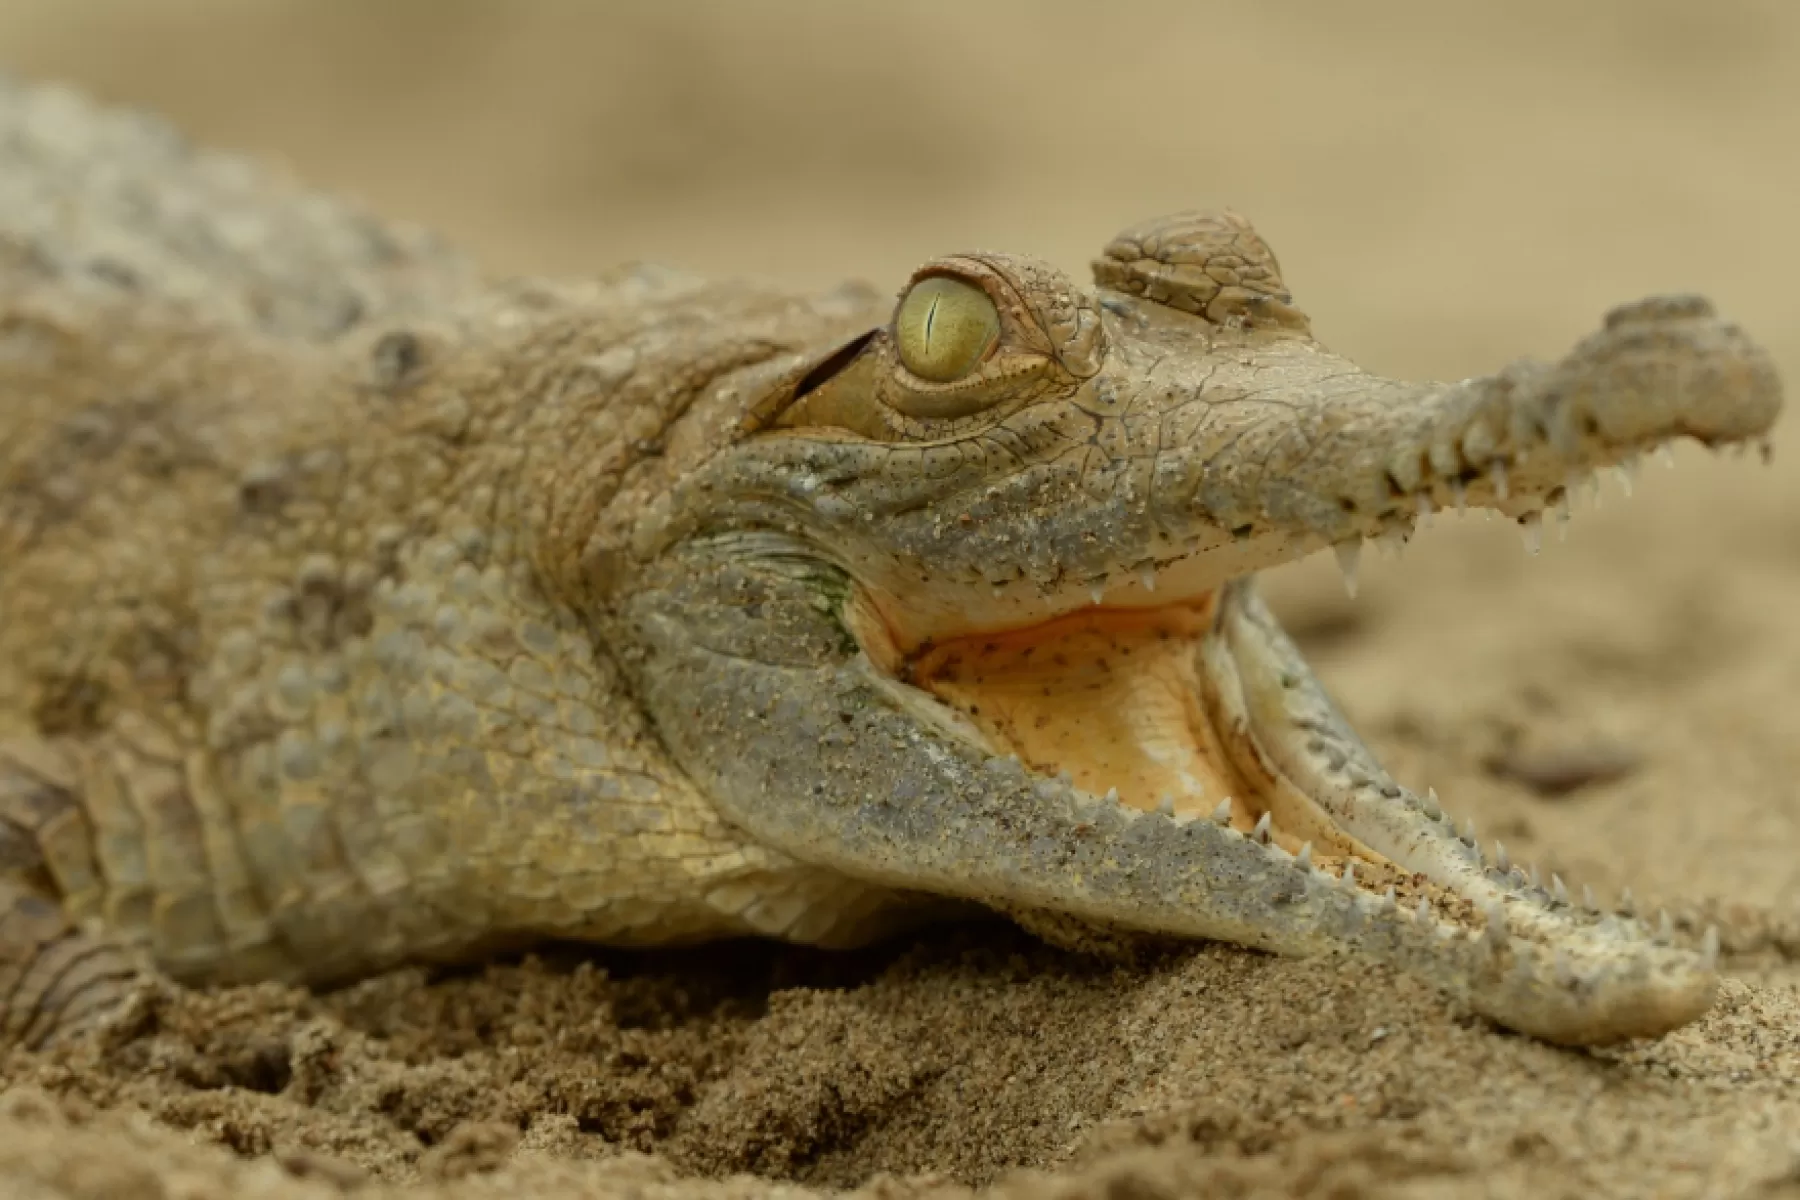 El Cocodrilo del Orinoco o Crocodylus intermedius, también conocido como Caimán Llanero, emblemática especie en estado de amenaza crítico, tendrá una nueva oportunidad para su conservación. Foto: Pato Salcedo